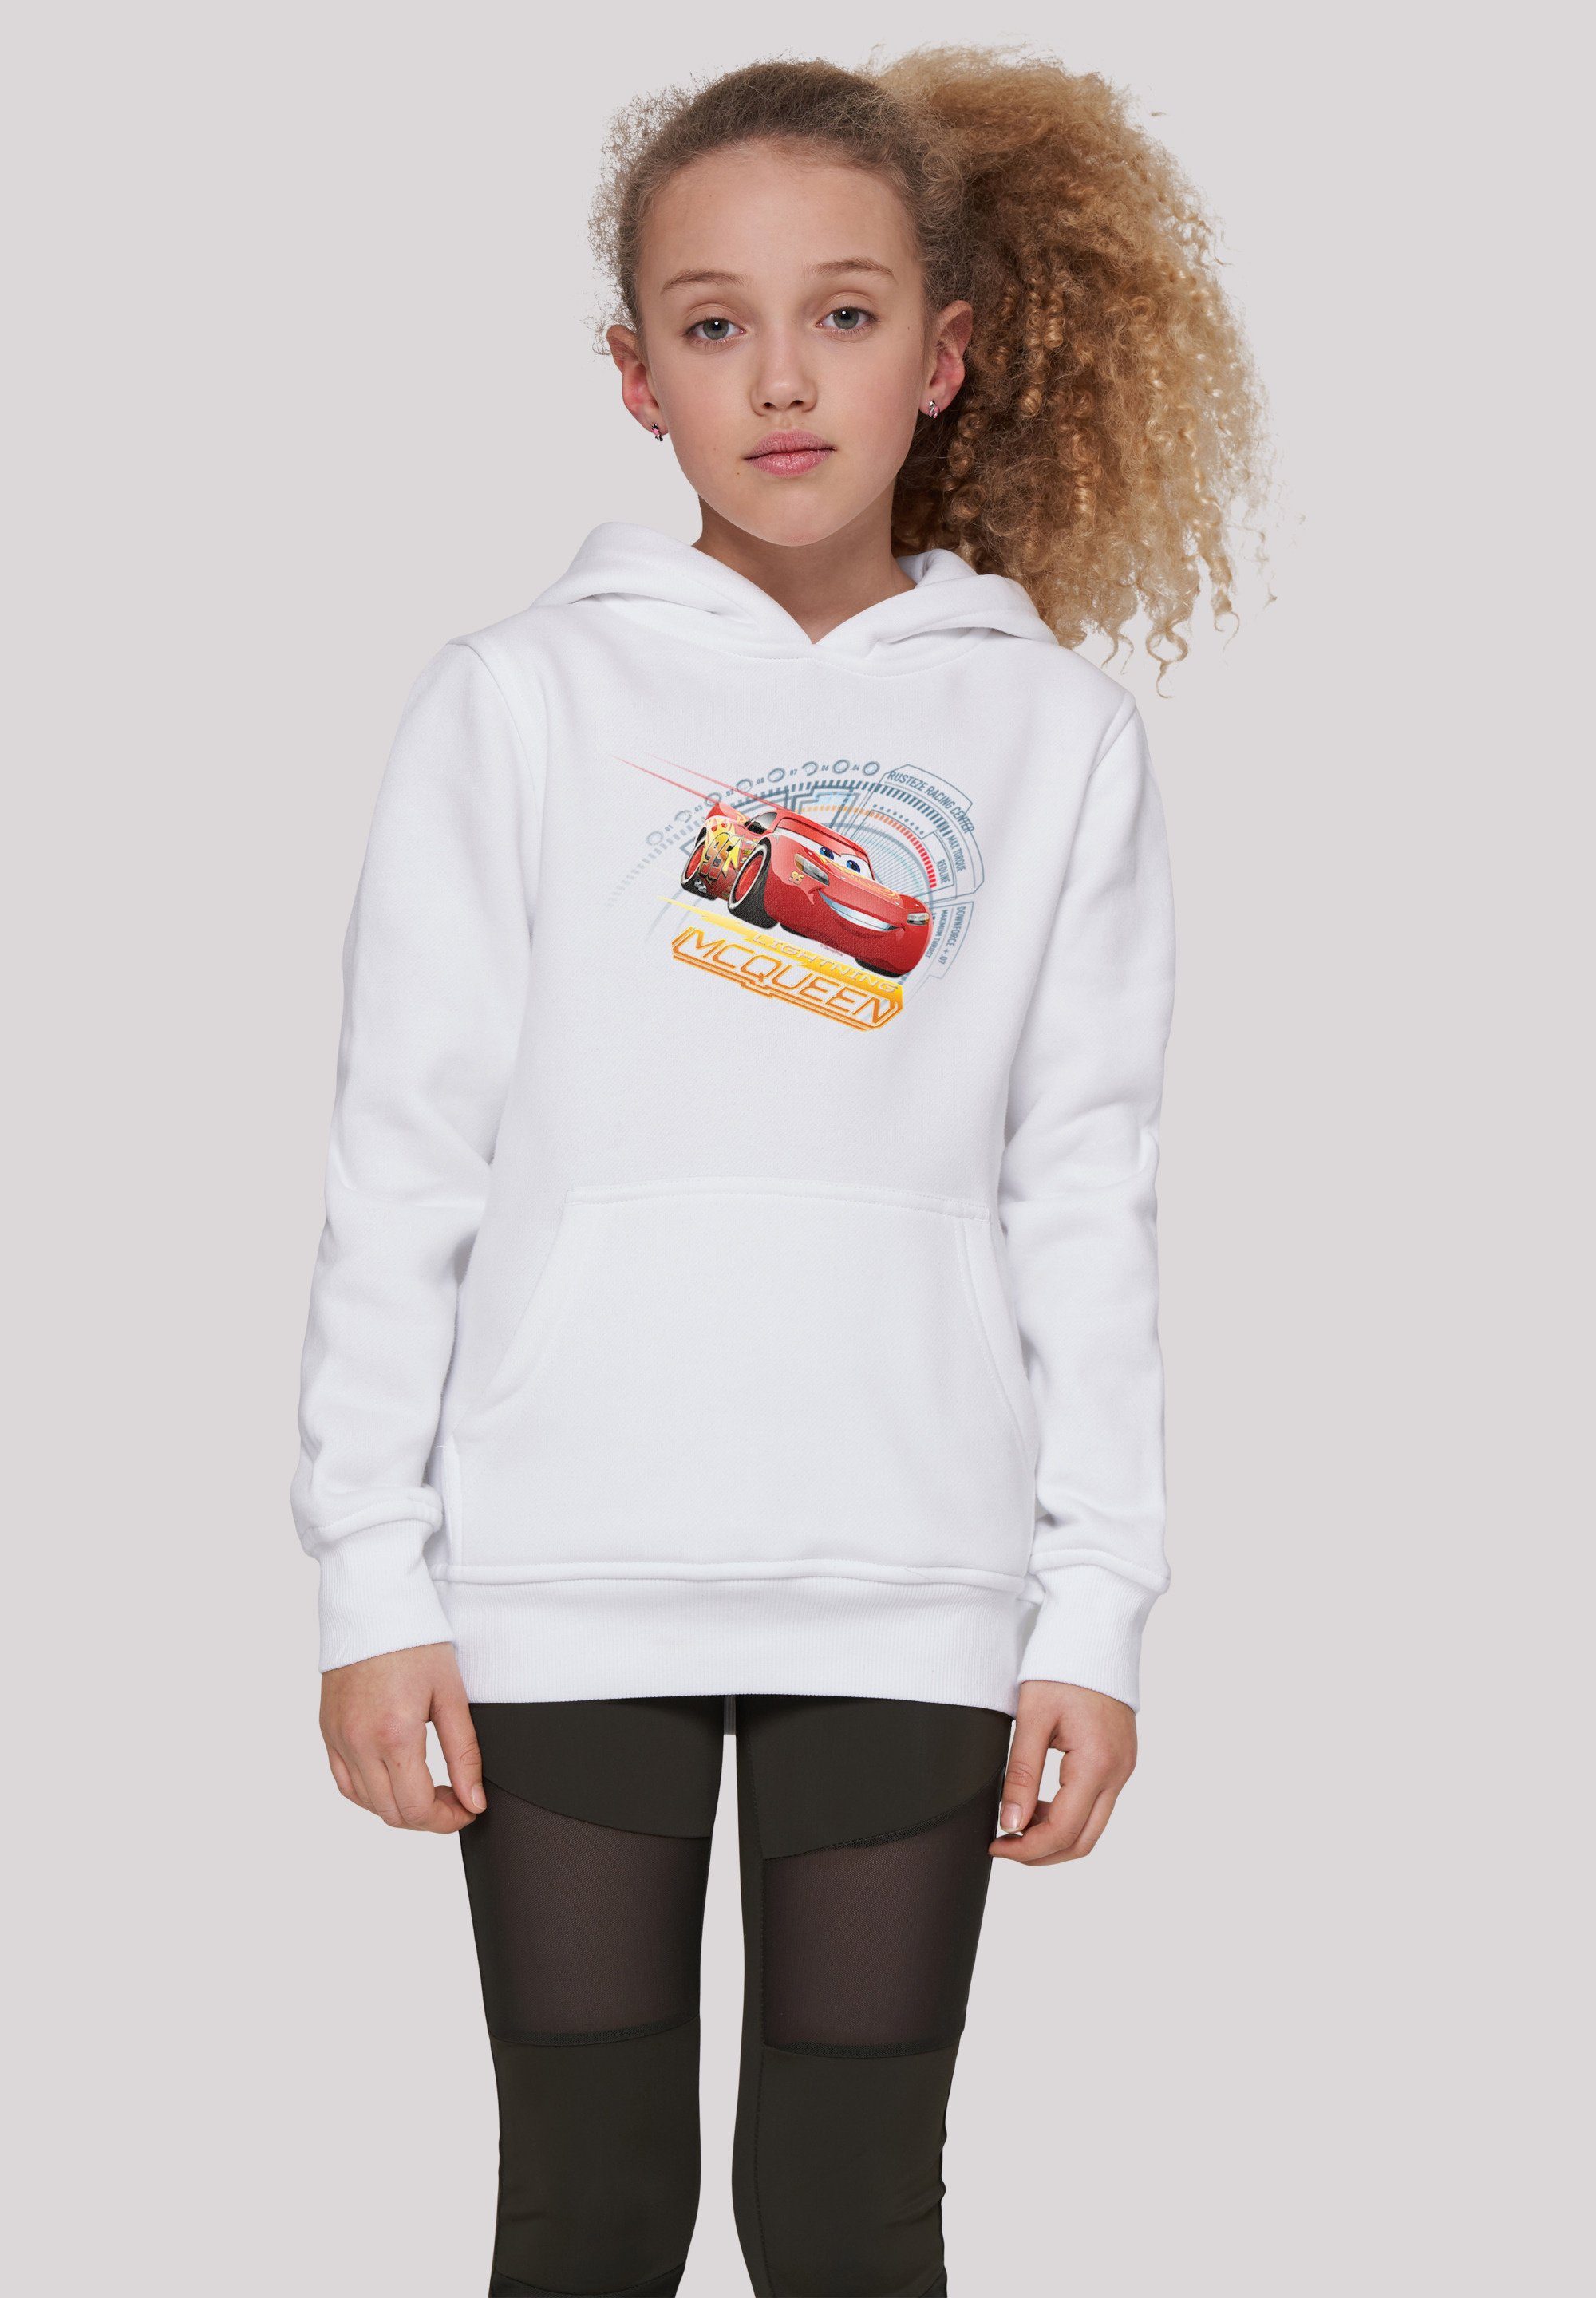 McQueen weiß Disney Kinder,Premium Merch,Jungen,Mädchen,Bedruckt F4NT4STIC Cars Lightning Sweatshirt Unisex